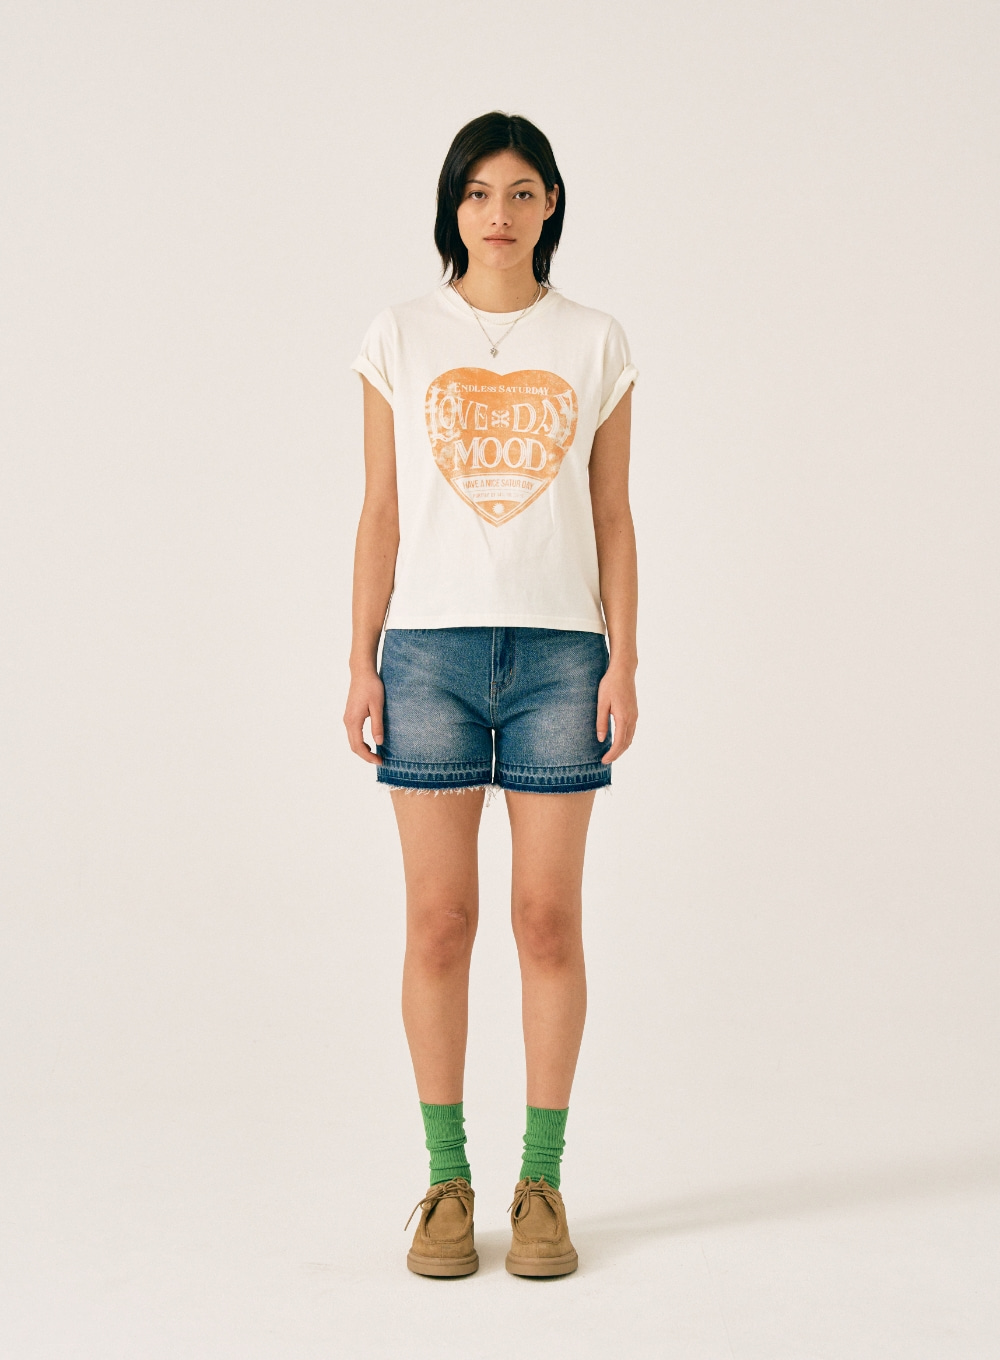 [5,000원 쿠폰] (W) Saturday Retro Mood Graphic T-Shirts - Cream Orange